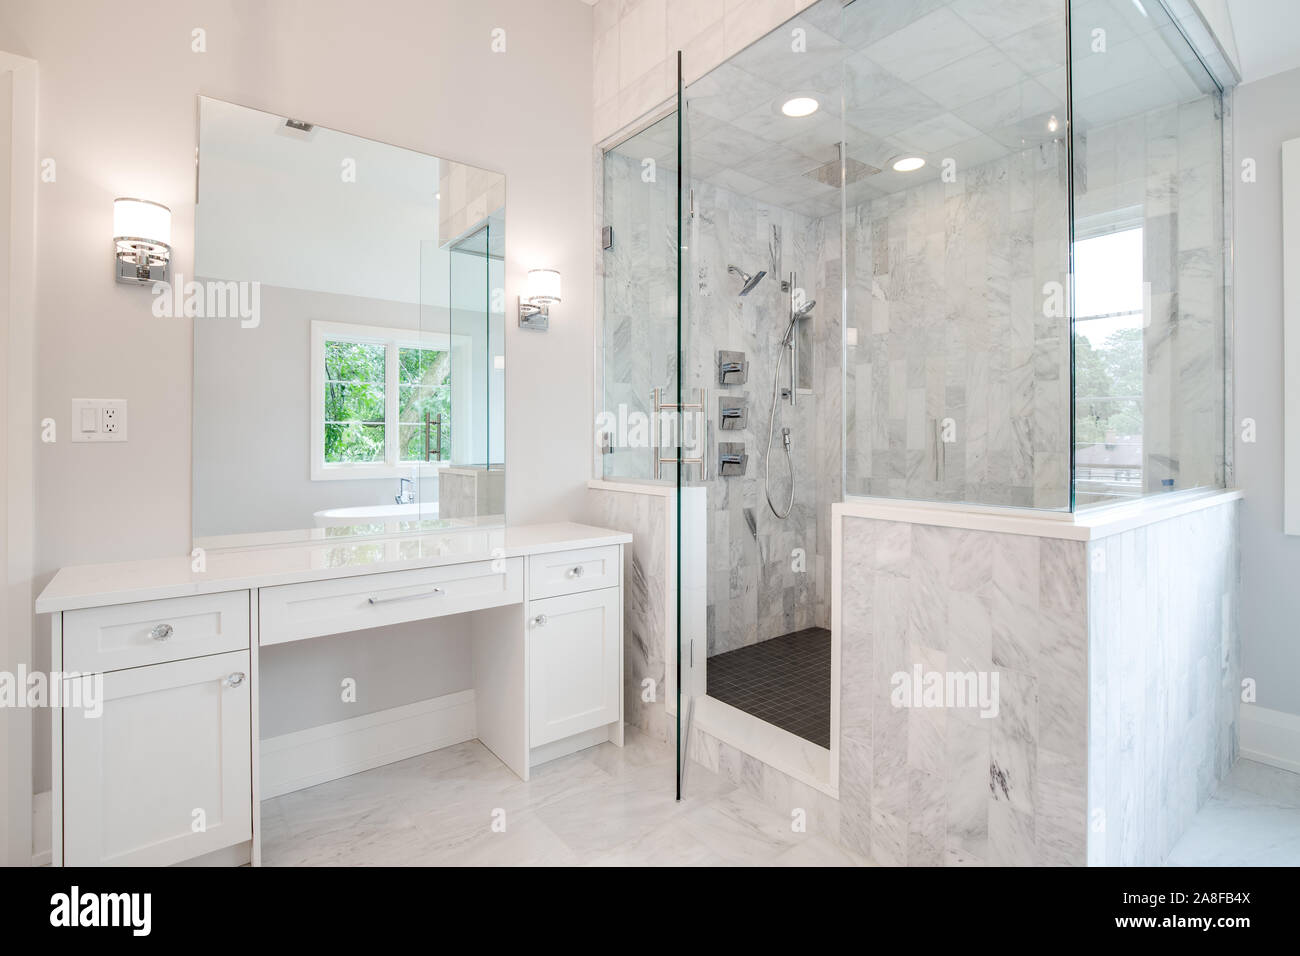 Ein helles Luxus Badezimmer mit einer großen Dusche und kleine, weiße  Eitelkeit Zähler nach oben. Ein Stand-alone-Wanne kann durch den Spiegel  gesehen werden Stockfotografie - Alamy